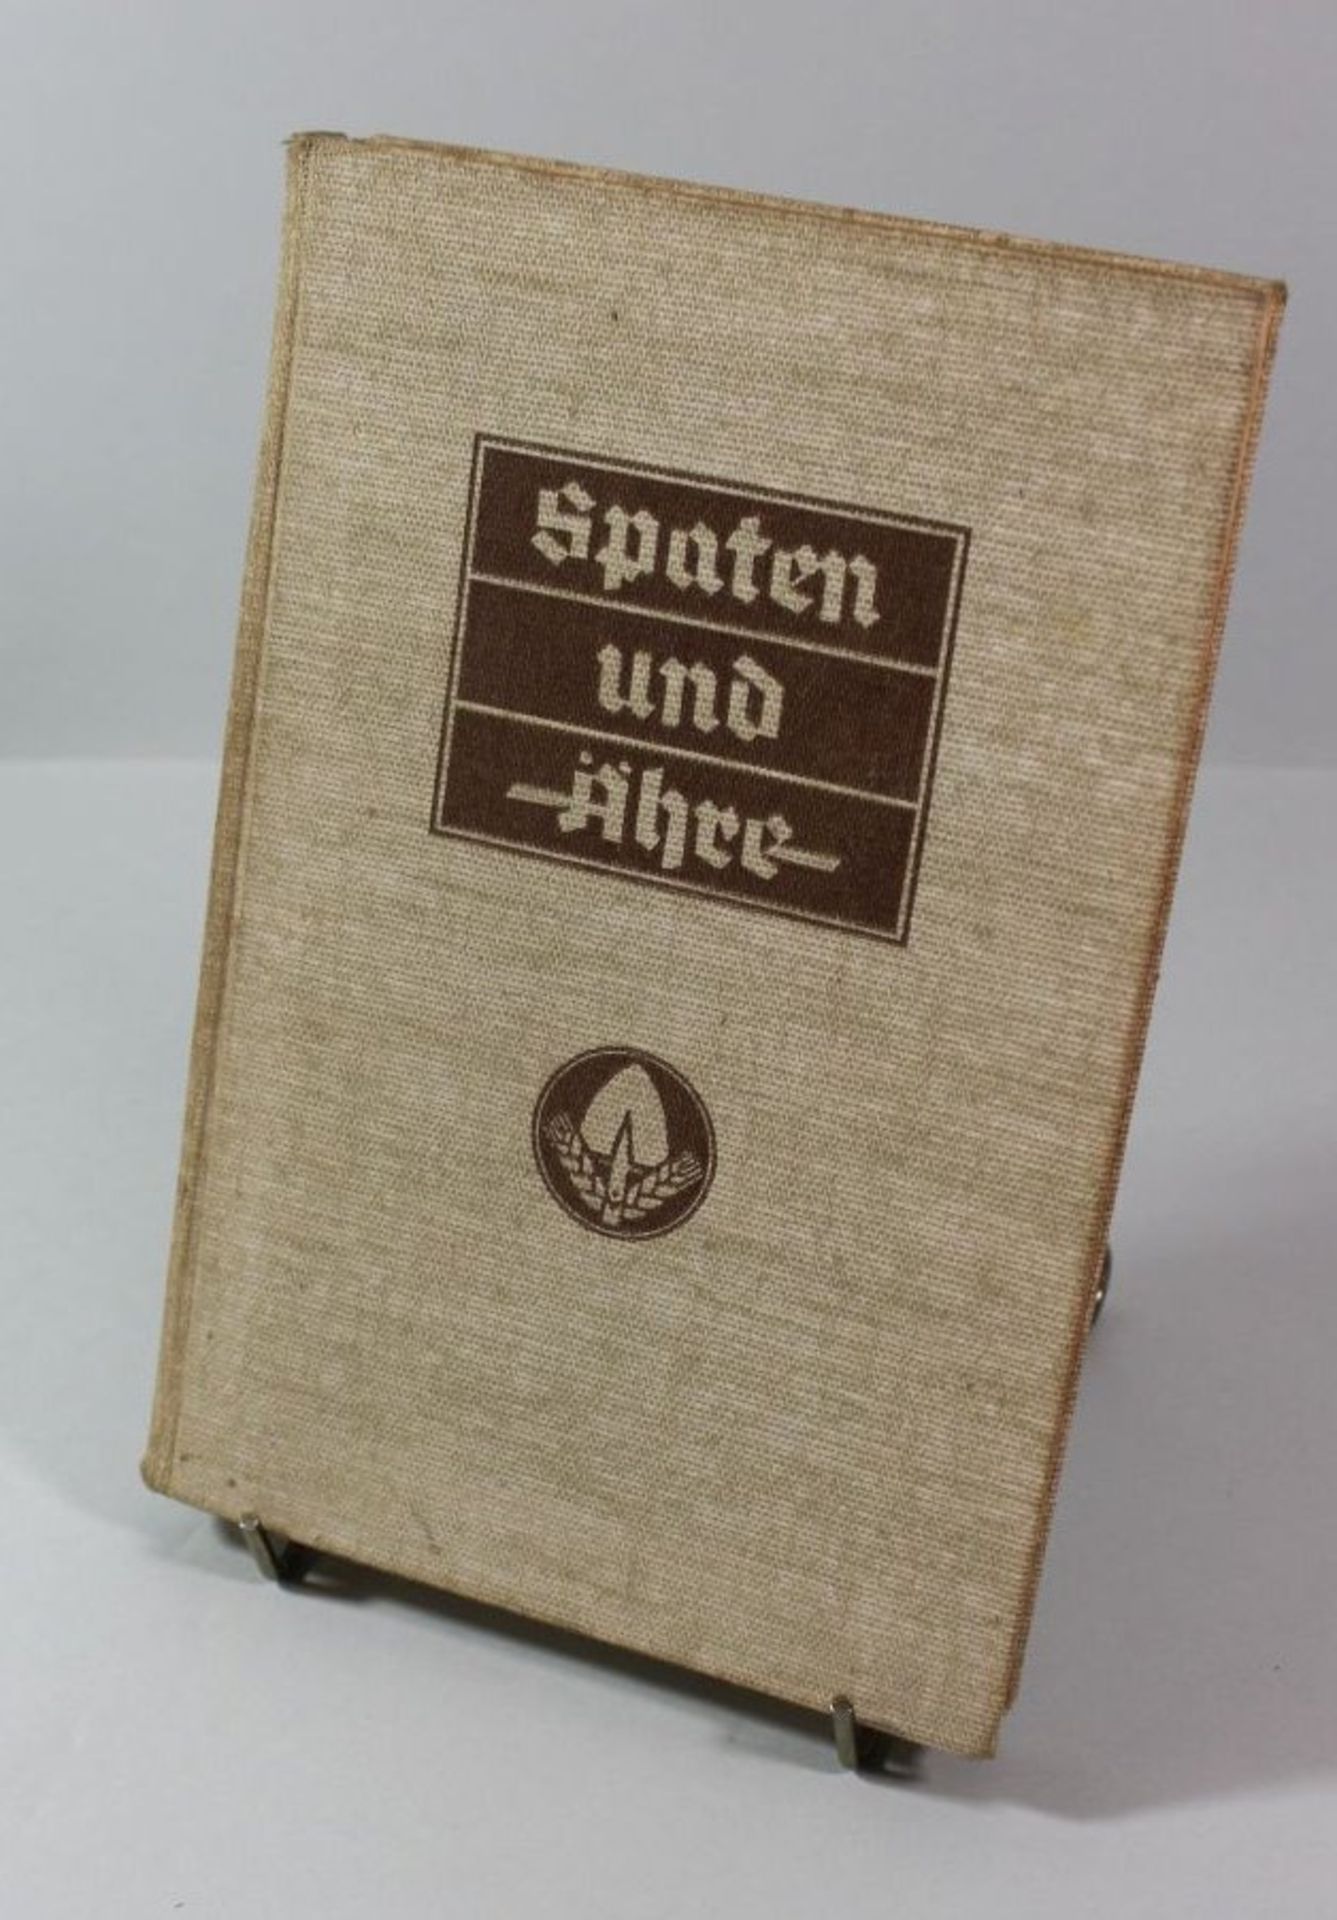 Spaten und Ähre-Das Handbuch der deutschen Jugend im Reichsarbeitsdienst, 1937, Alters-u.